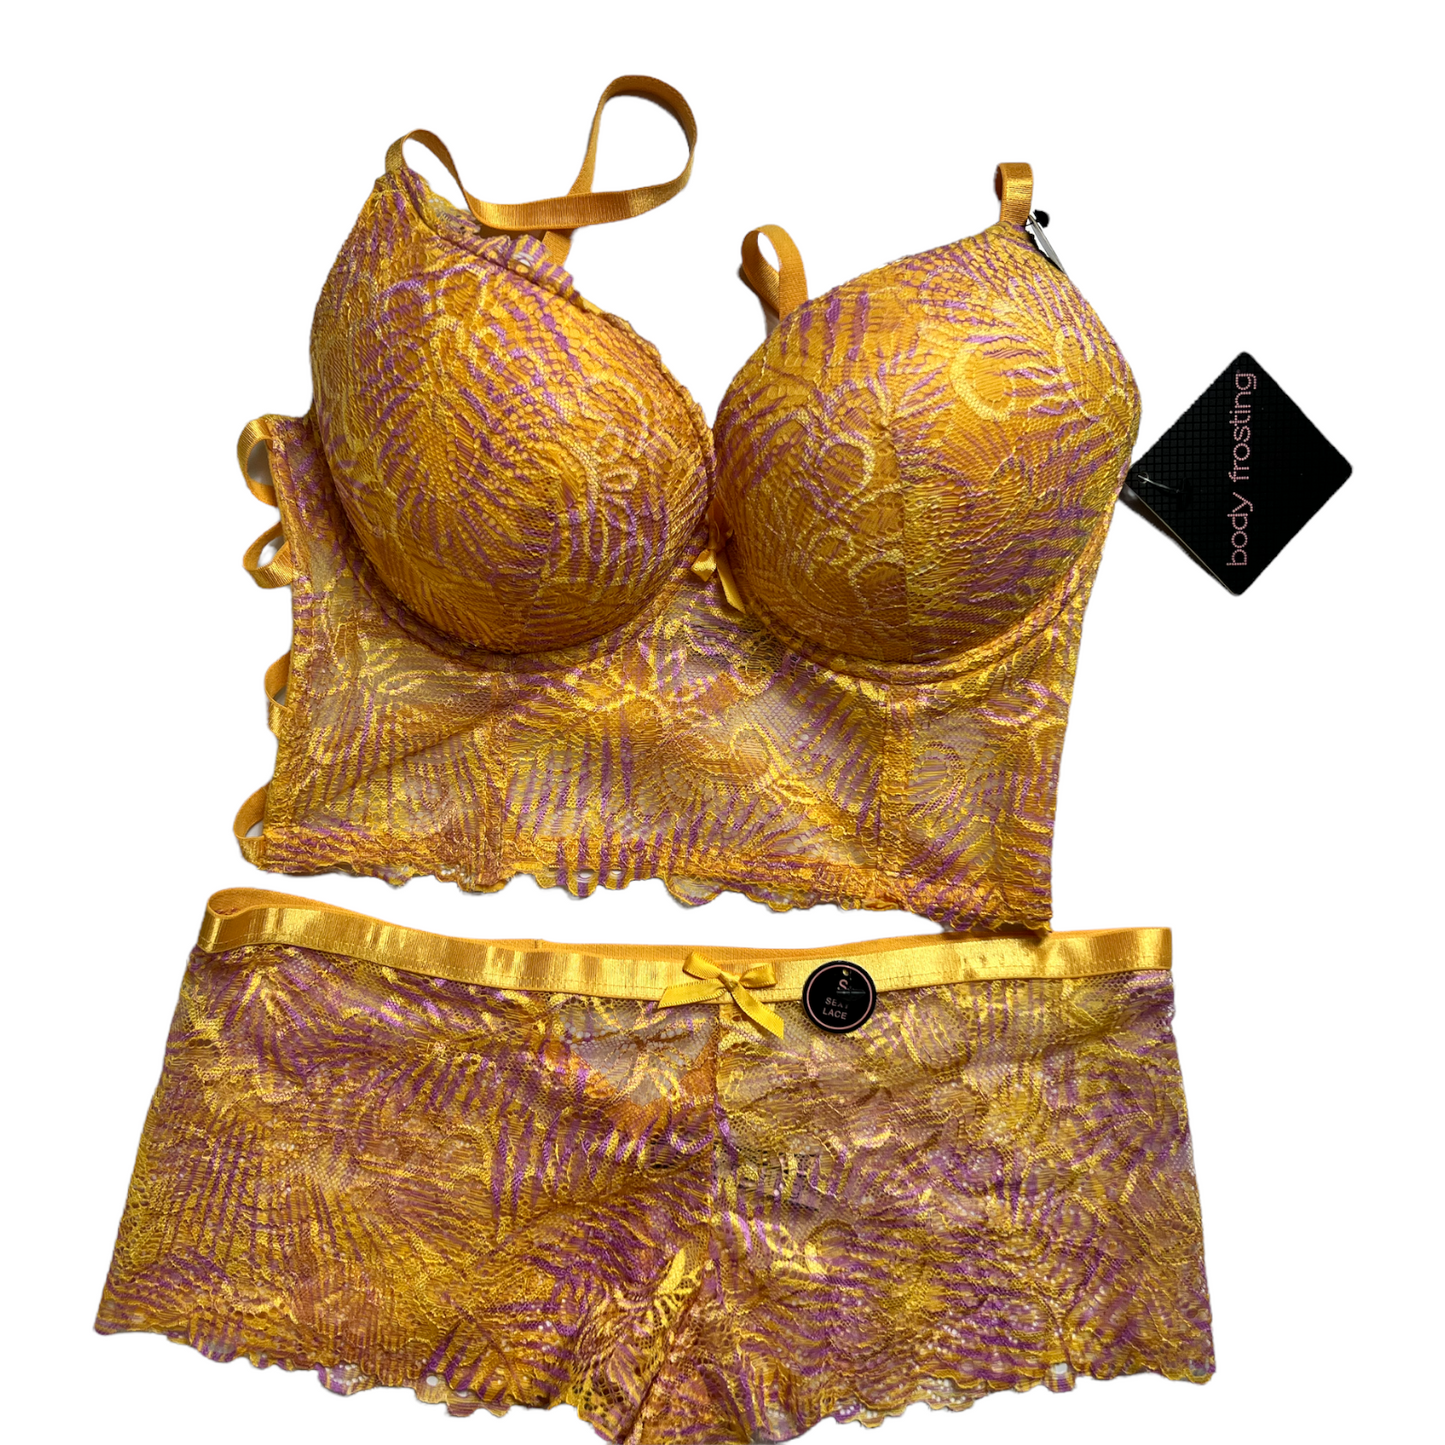 NEW Body Frosting Light Gold/Purple Lingerie Set, Sz S 34C Bra, Lace Panty